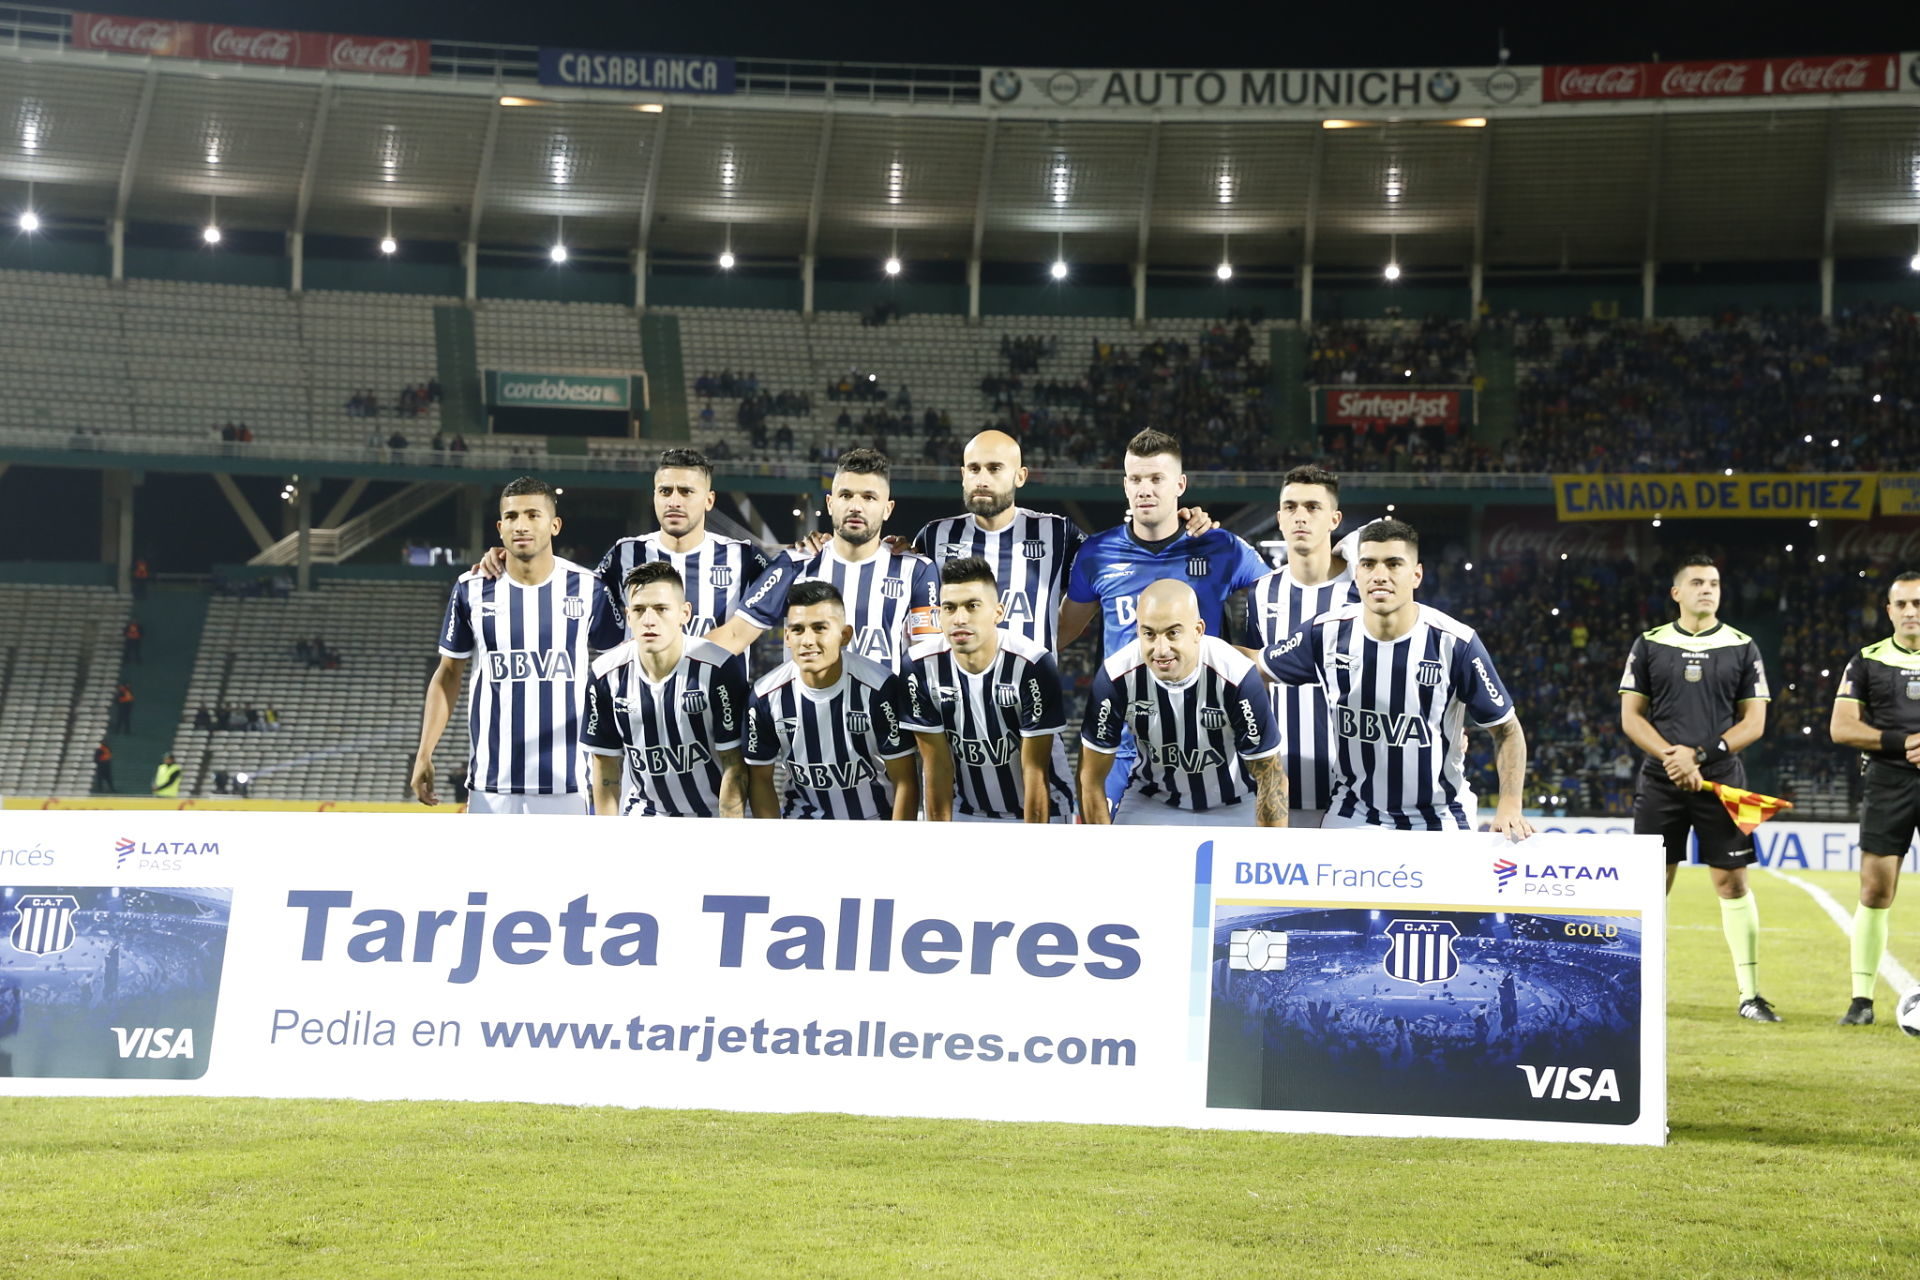 El equipo de Talleres posa frente al cartel de Tarjeta Talleres